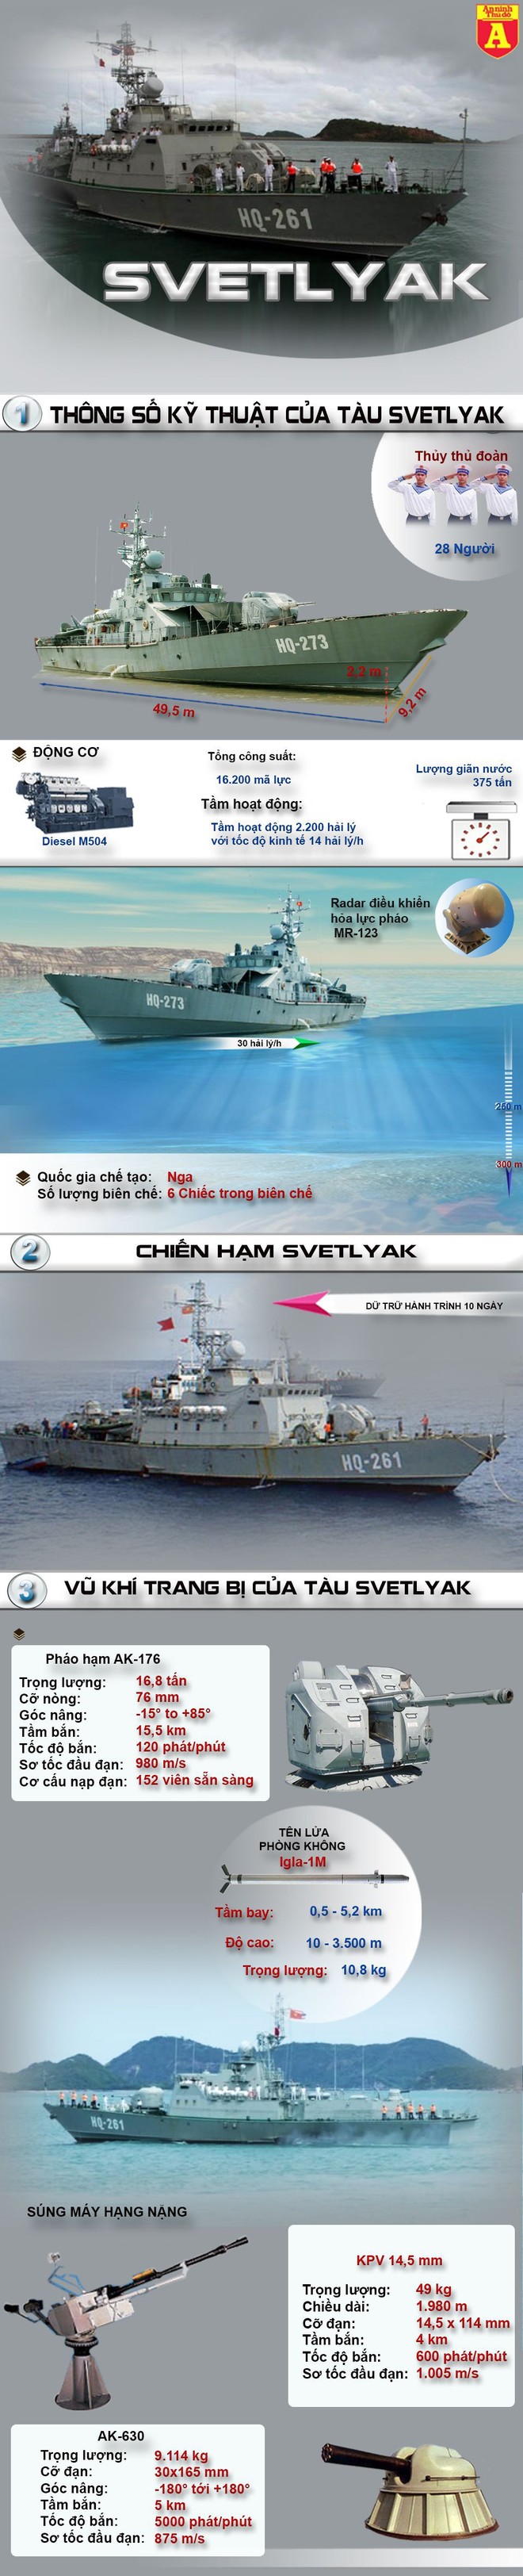 [Infographic] Svetlyak - Sức mạnh tàu pháo cao tốc canh biển của Việt Nam ảnh 1